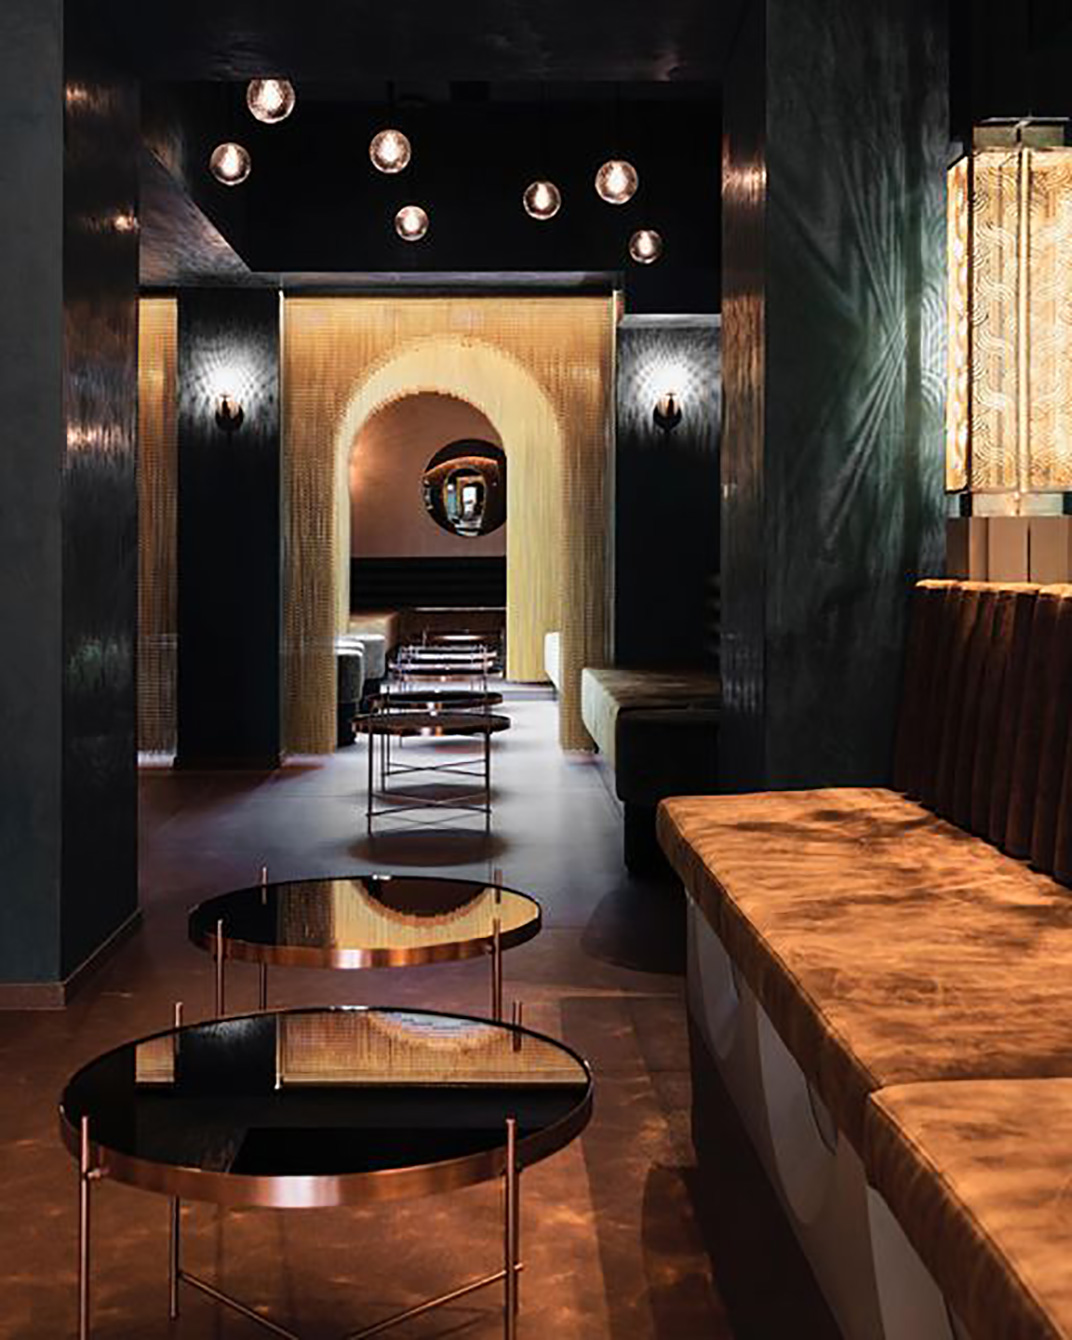 水烟酒廊Touareg 比利时 上海 酒吧 金属帘子 logo设计 vi设计 空间设计